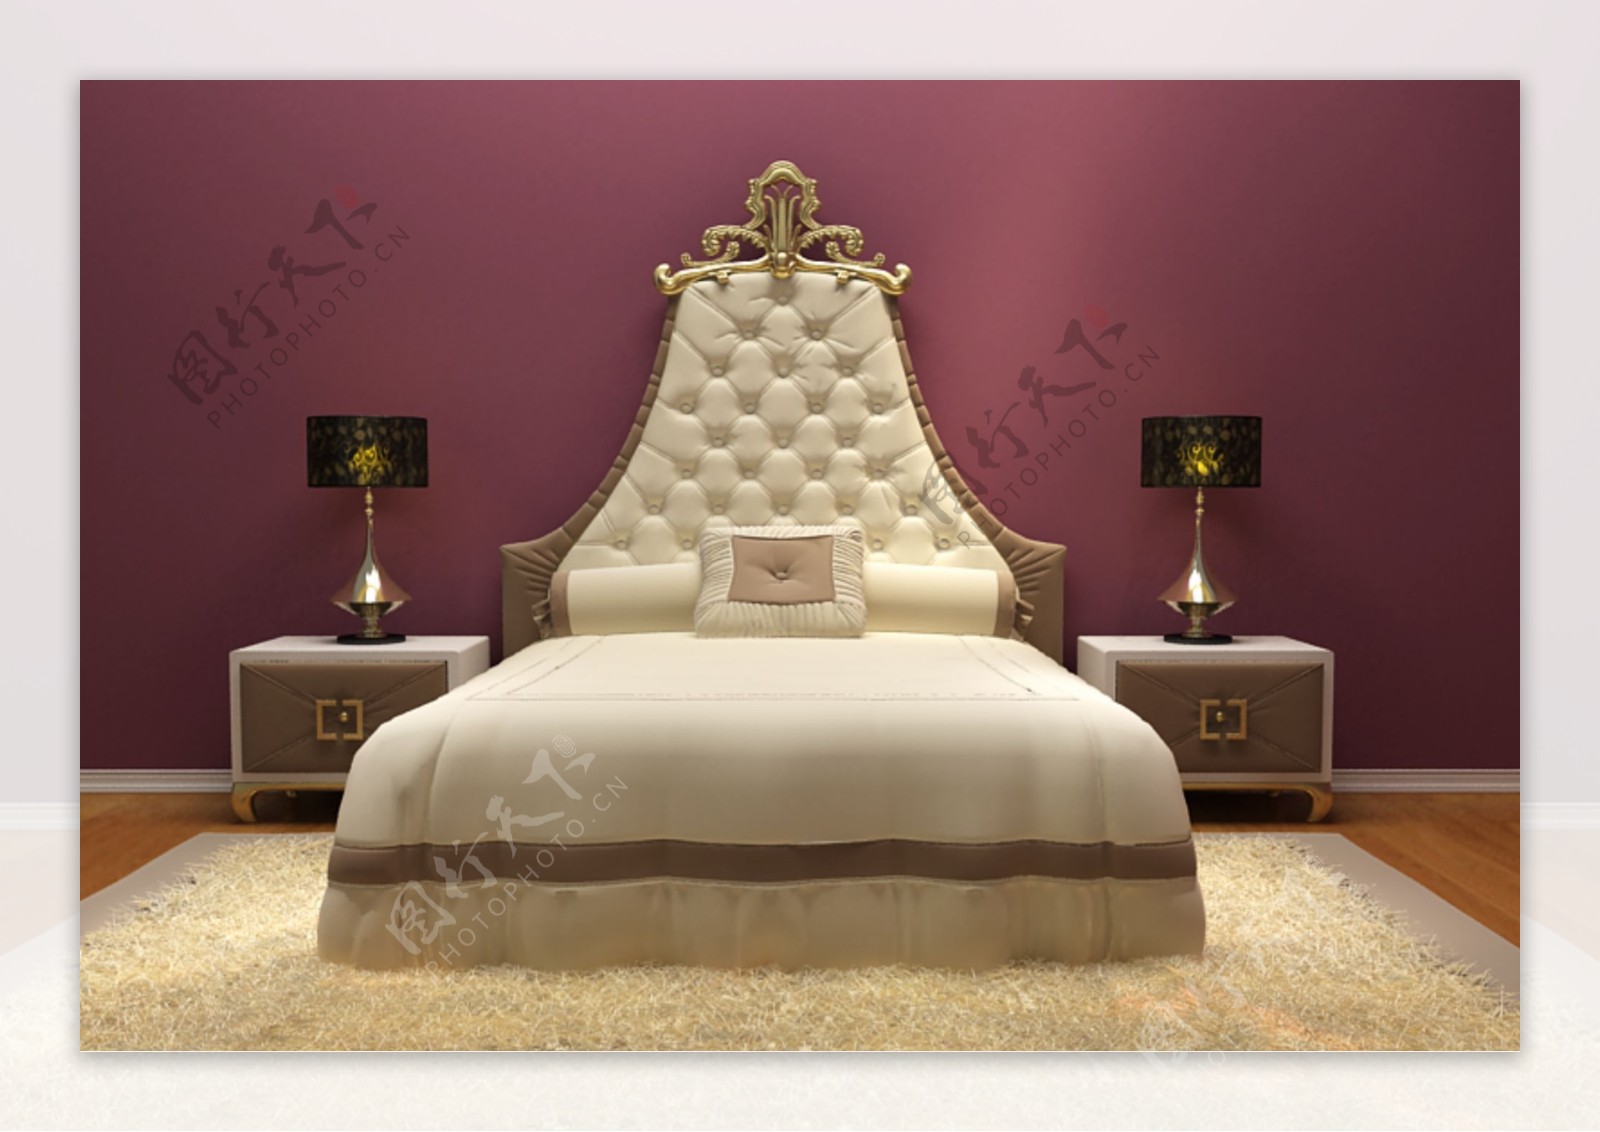 皇冠床家具装饰模具模型